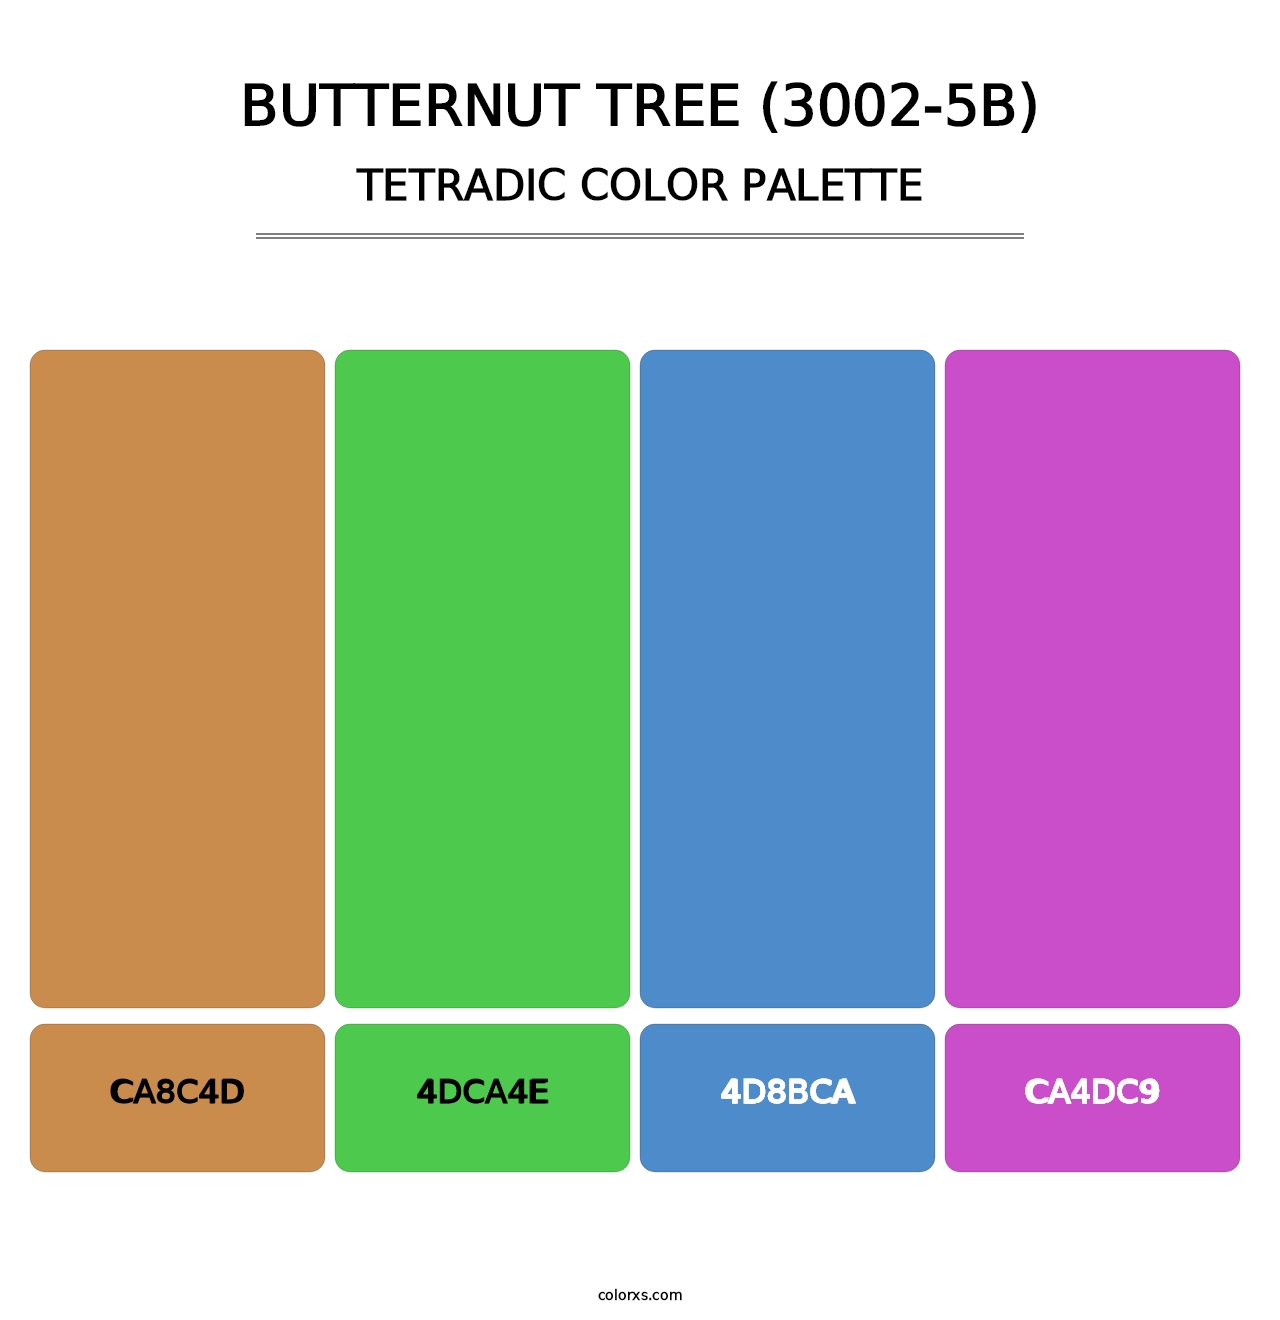 Butternut Tree (3002-5B) - Tetradic Color Palette